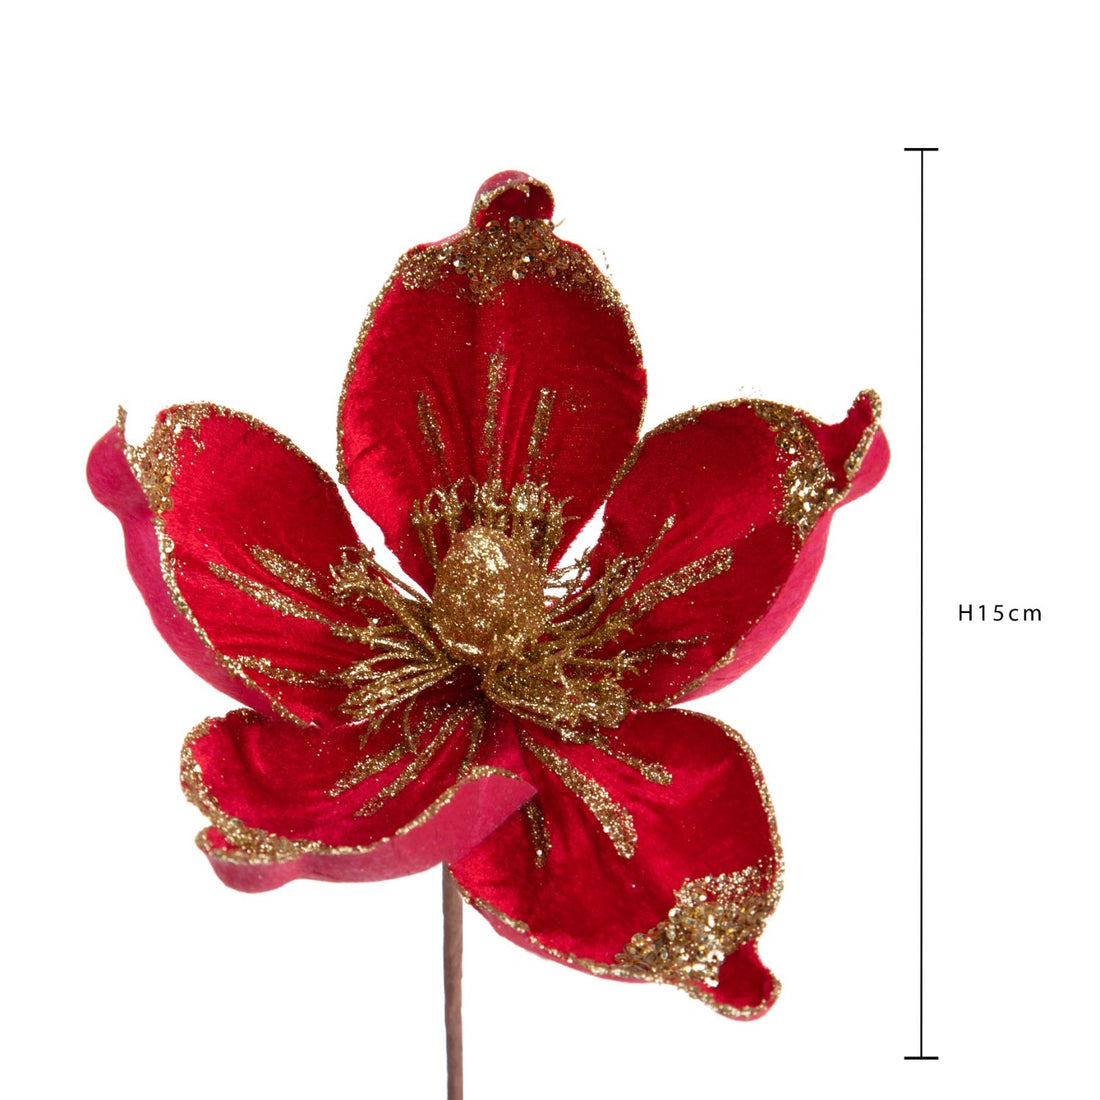 BIANCHI DINO Magnolia Fiore Sintetico 15cm Rosso